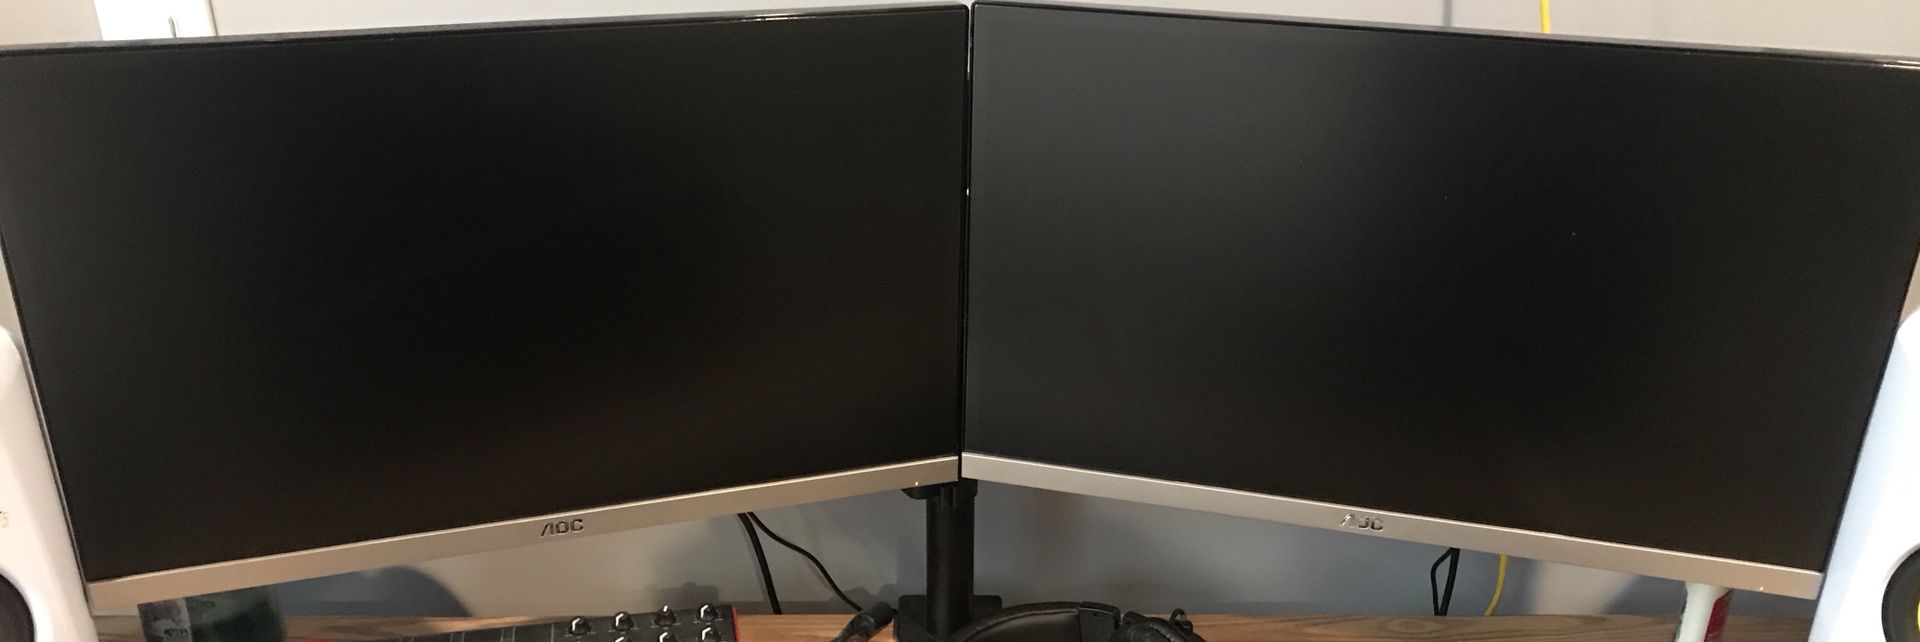 AOC 23’ dual monitors